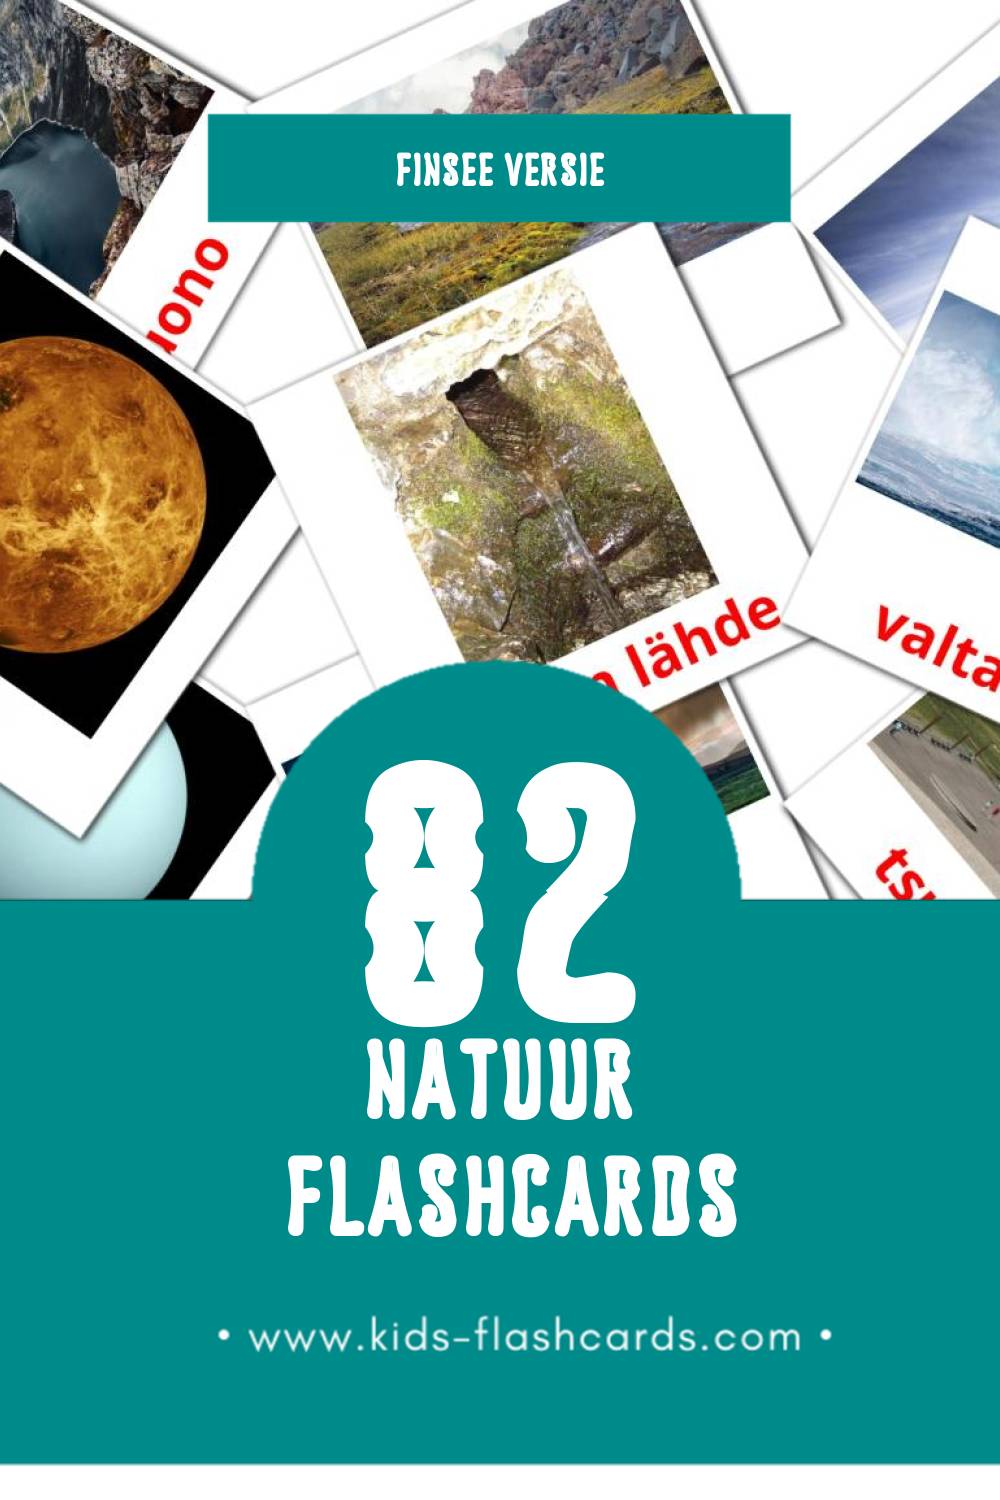 Visuele Luonto Flashcards voor Kleuters (82 kaarten in het Finse)